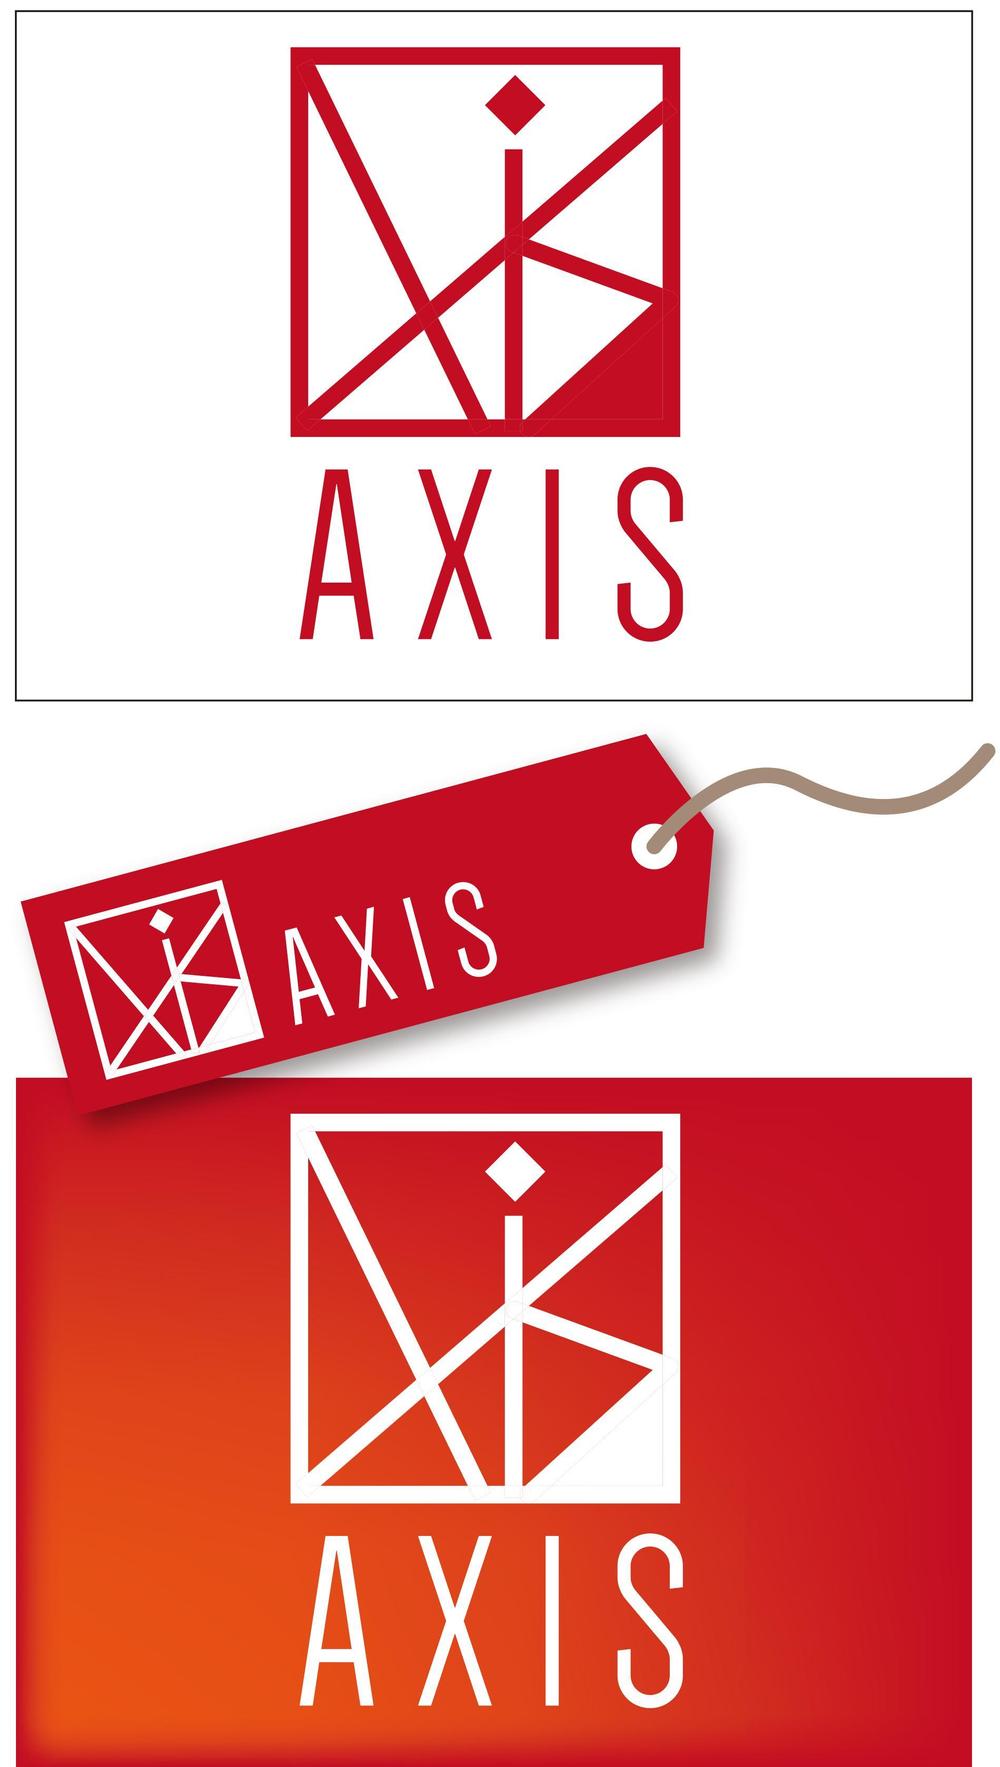 AXIS-001.jpg